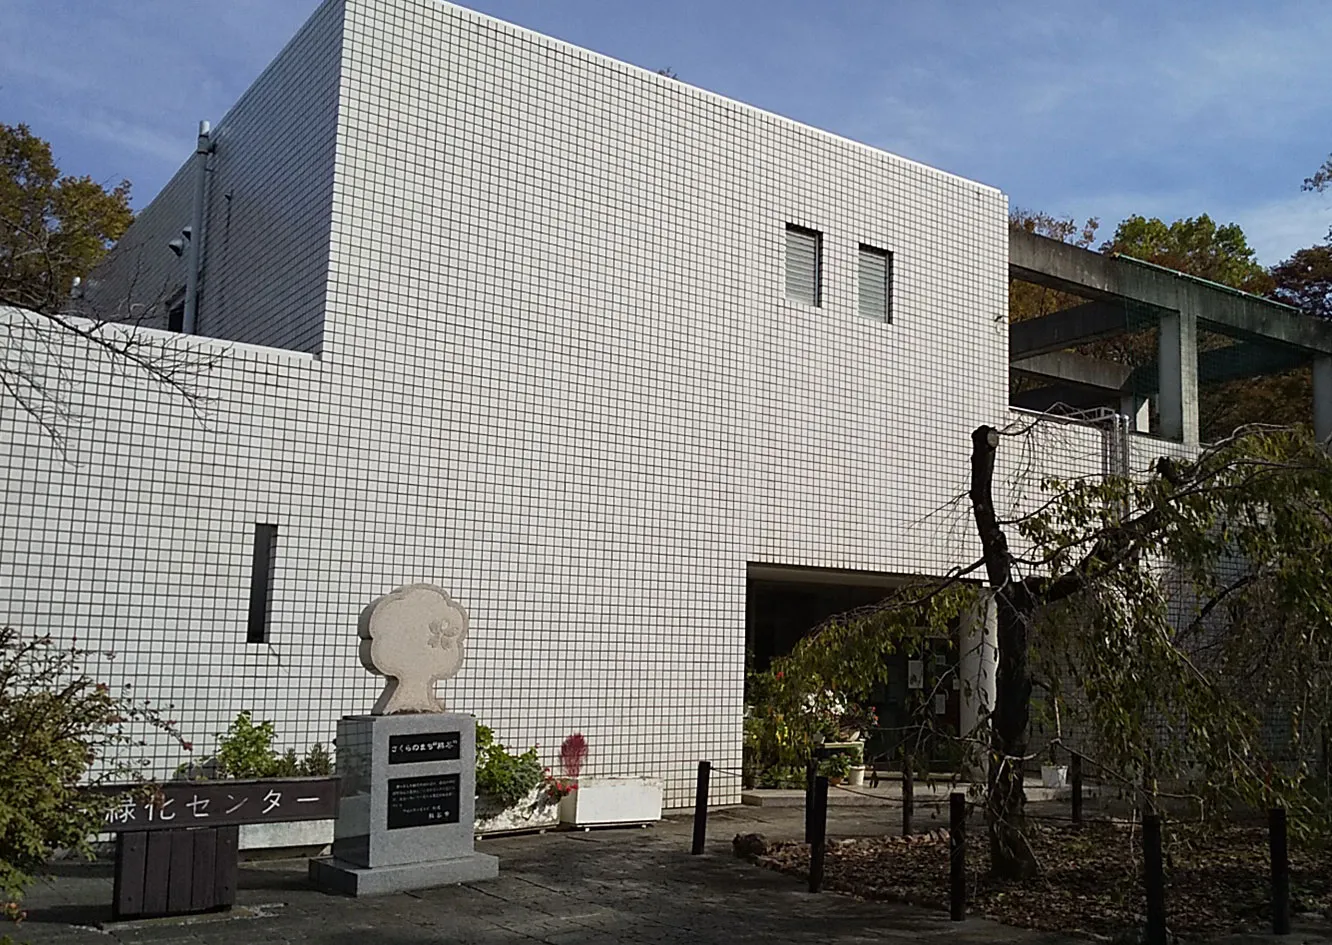 埼玉県シルバー人材センター 緑化センターイメージ画像